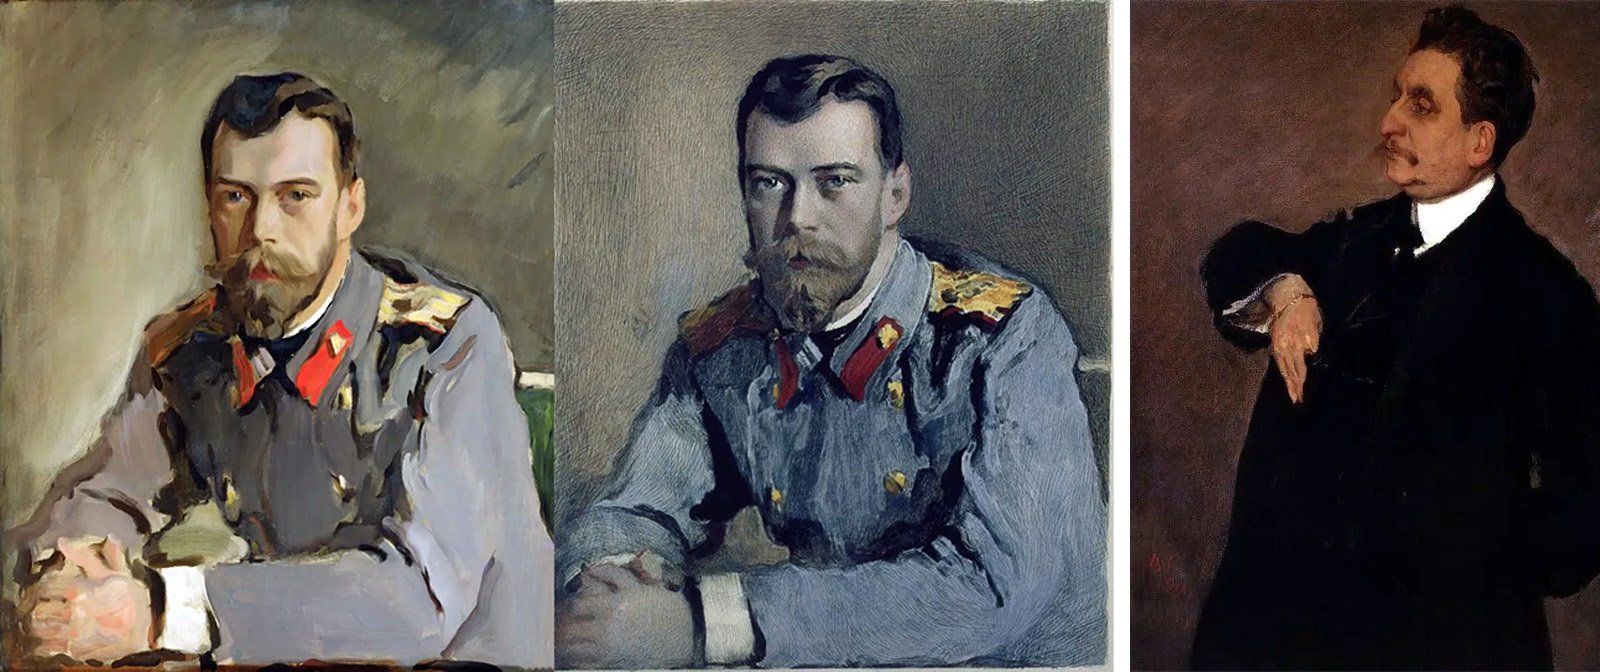 Как Валентин Серов разыграл всех своим портретом императора Николая II. Шутка, которую ещё долго не могли простить художнику.